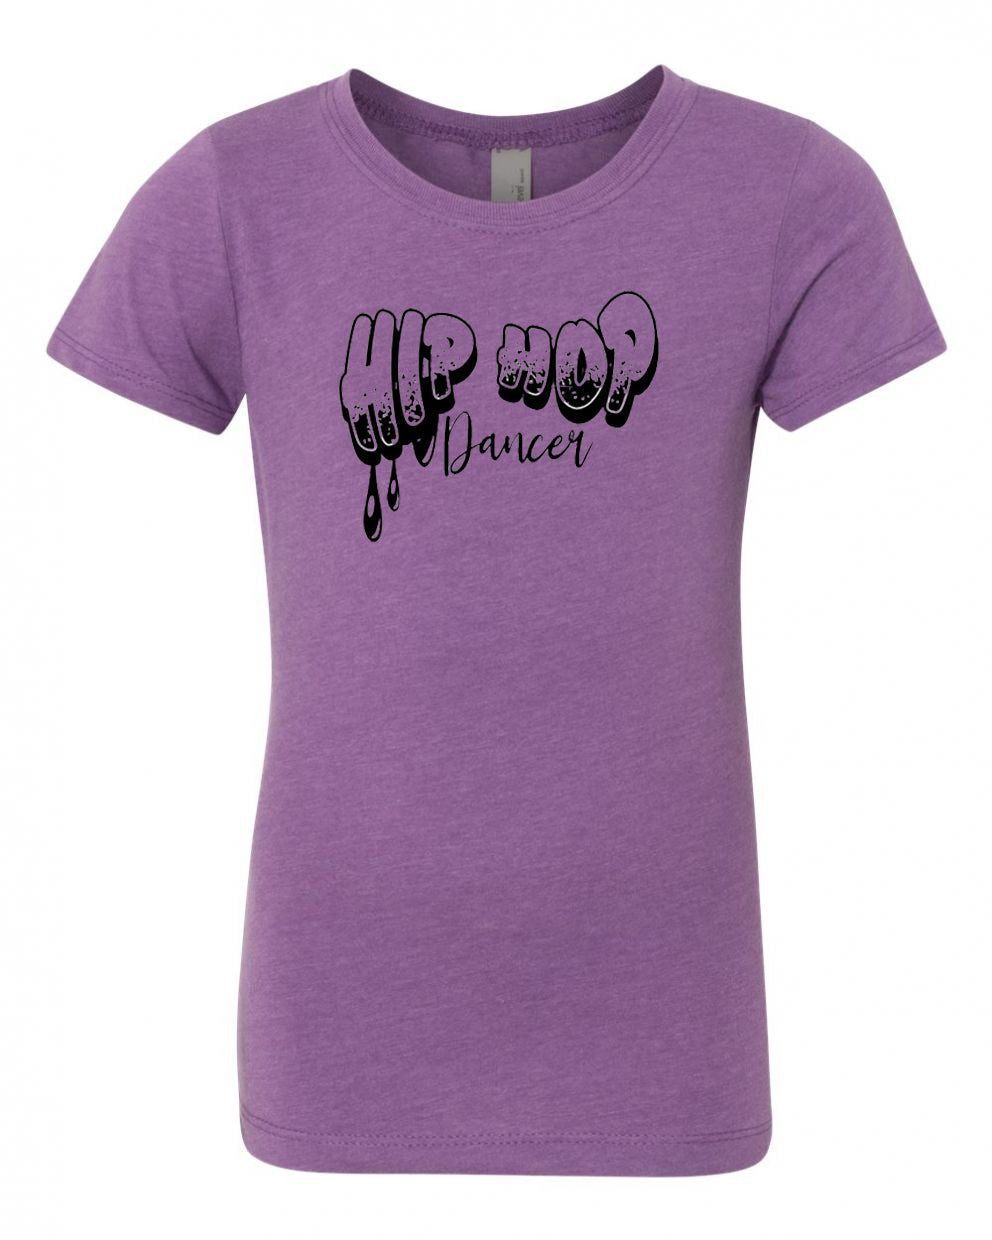 Hip Hop Dancer Girls T-Shirt Purple Berry